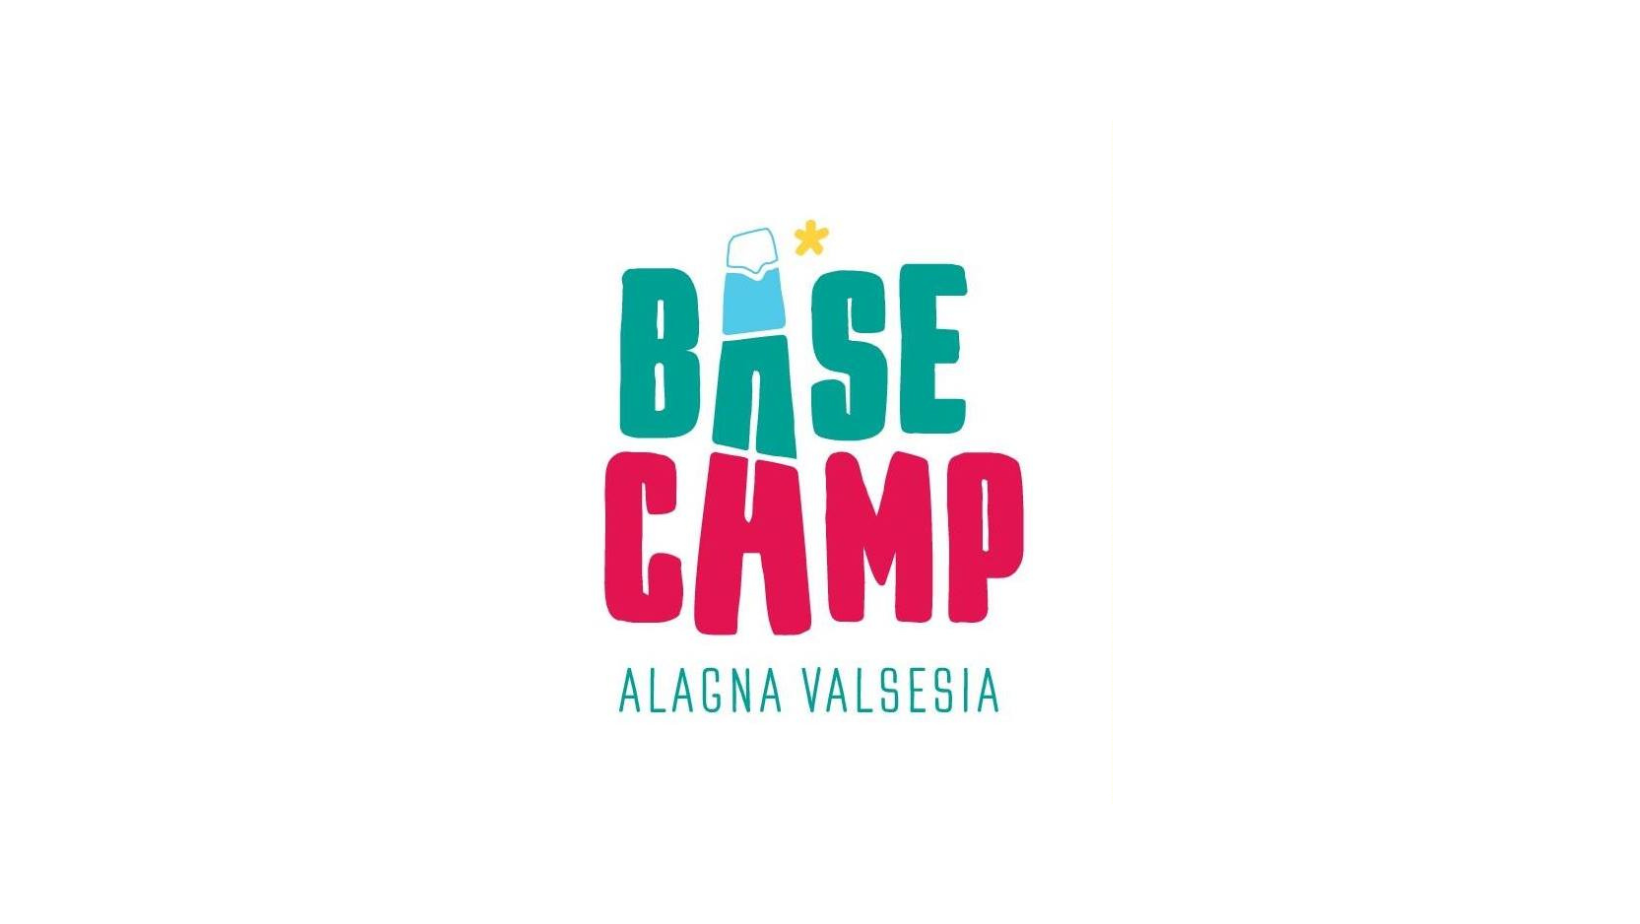 base camp 